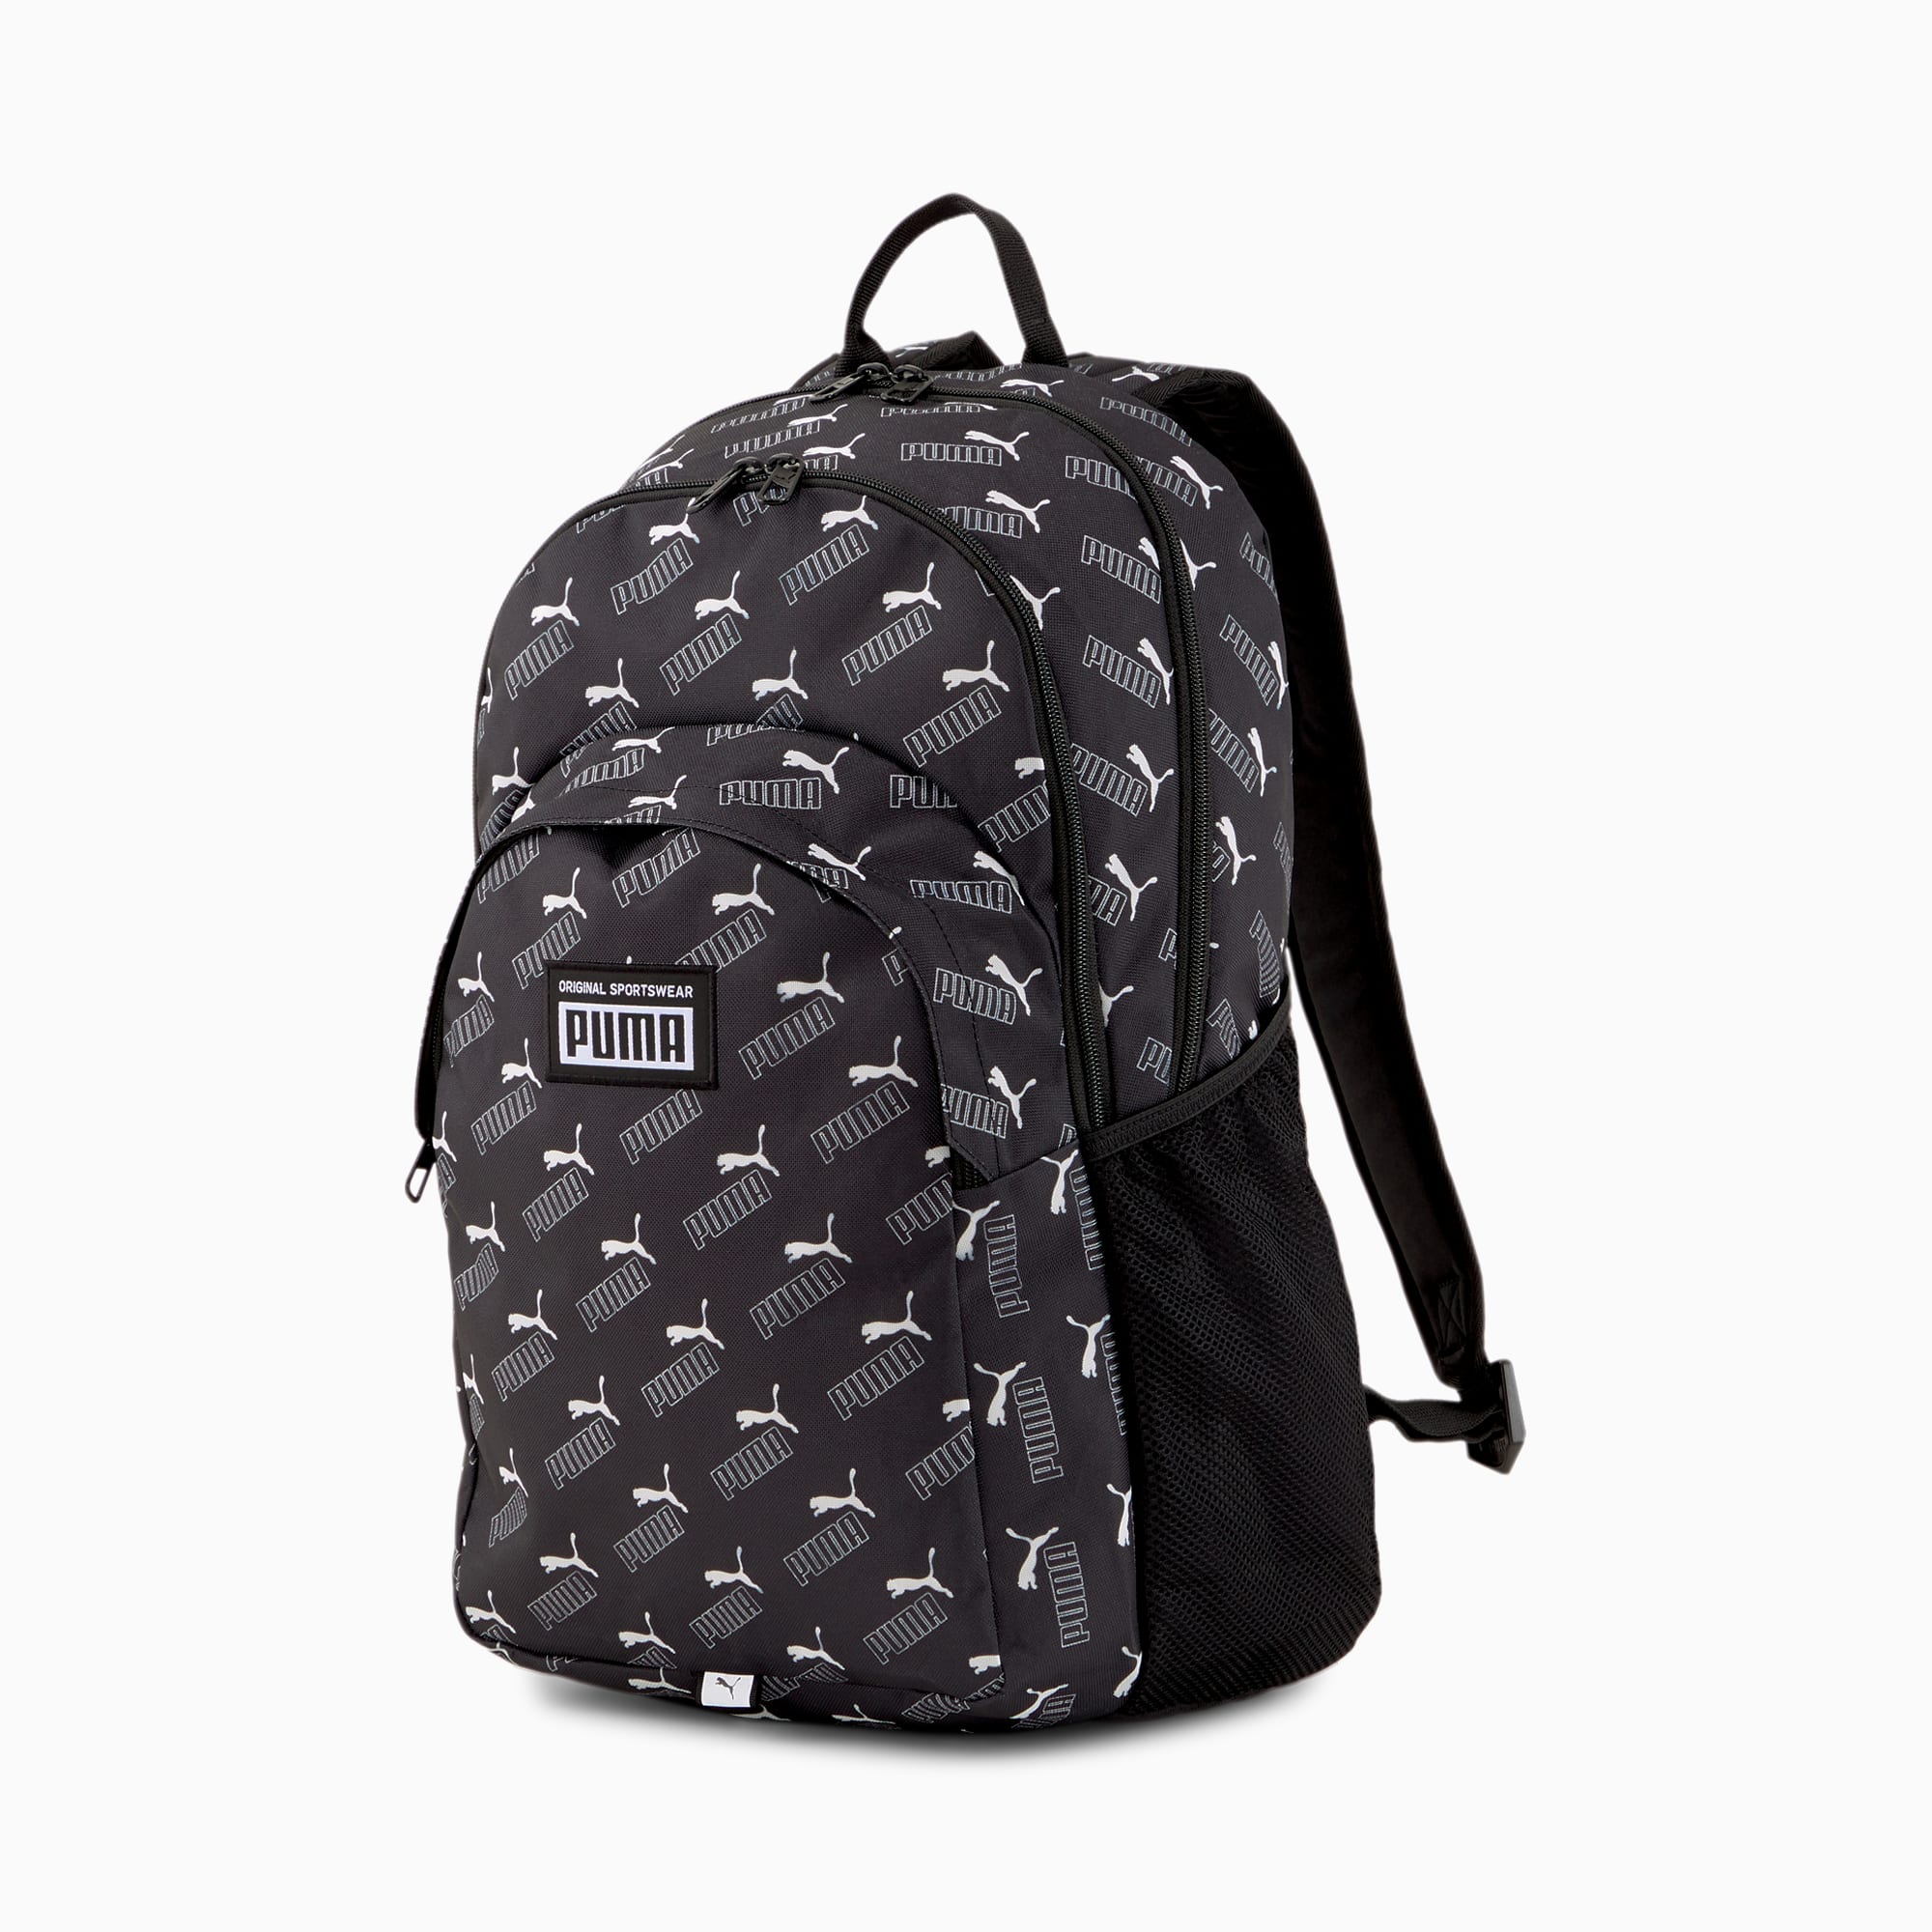 academy backpack puma